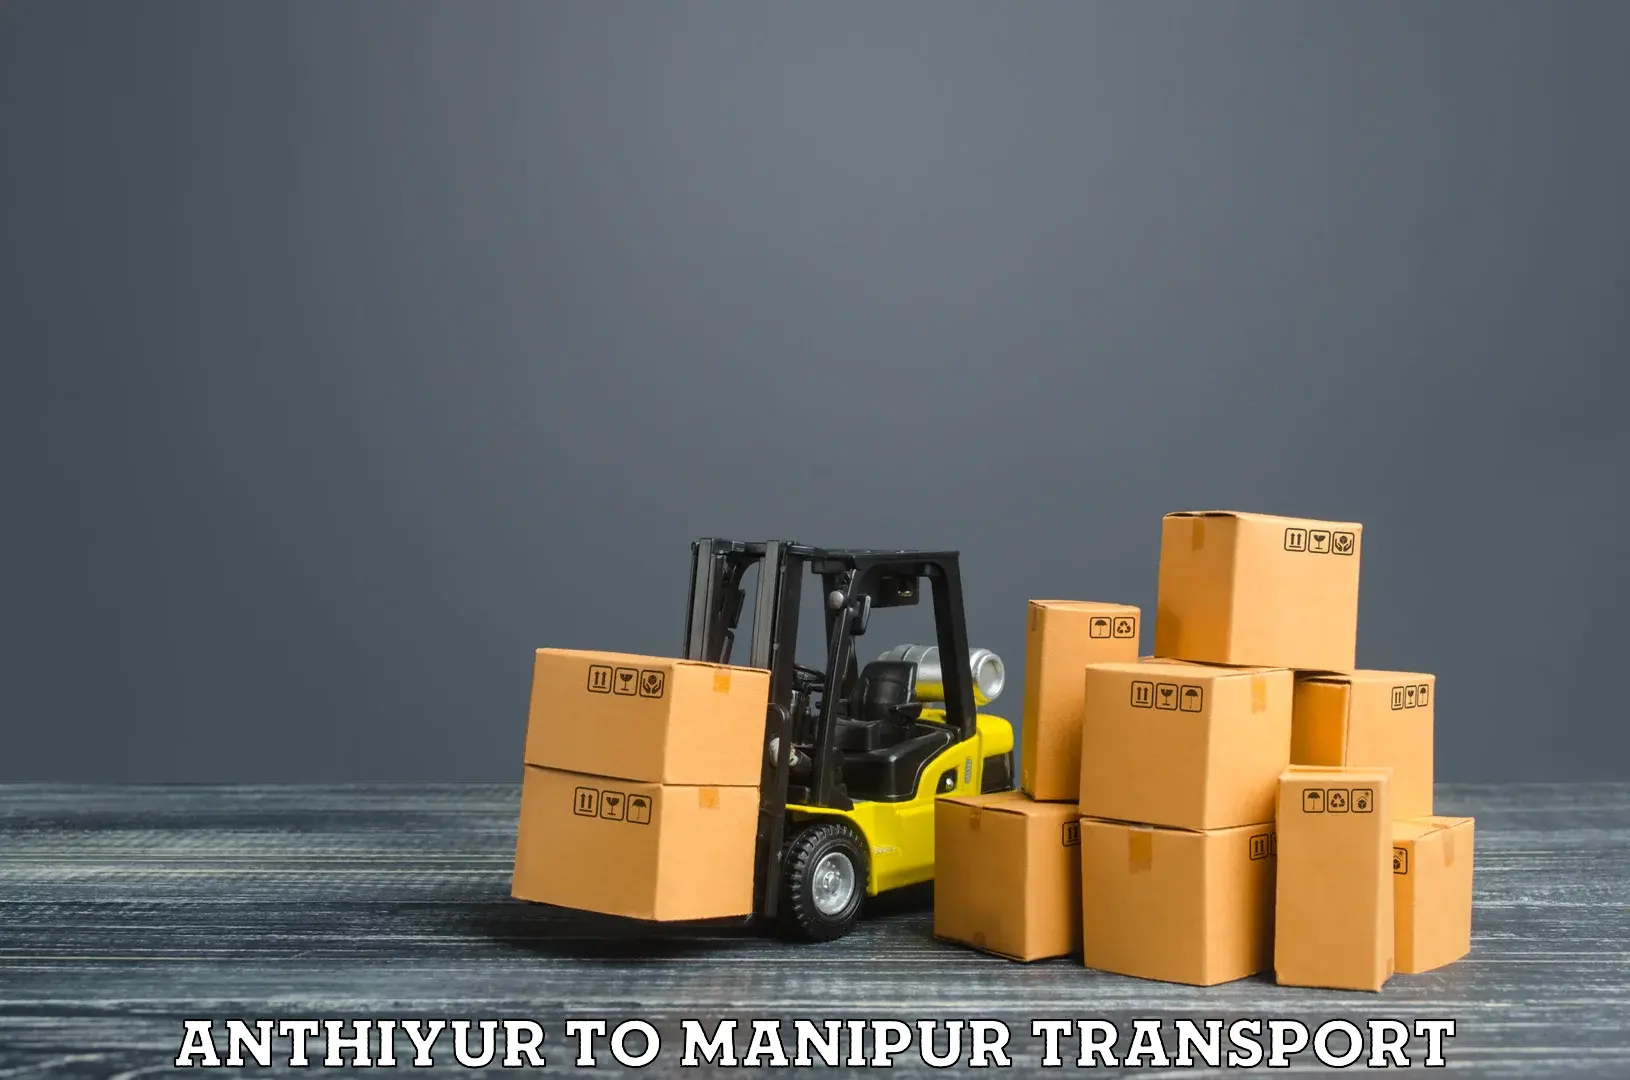 Daily transport service Anthiyur to Churachandpur